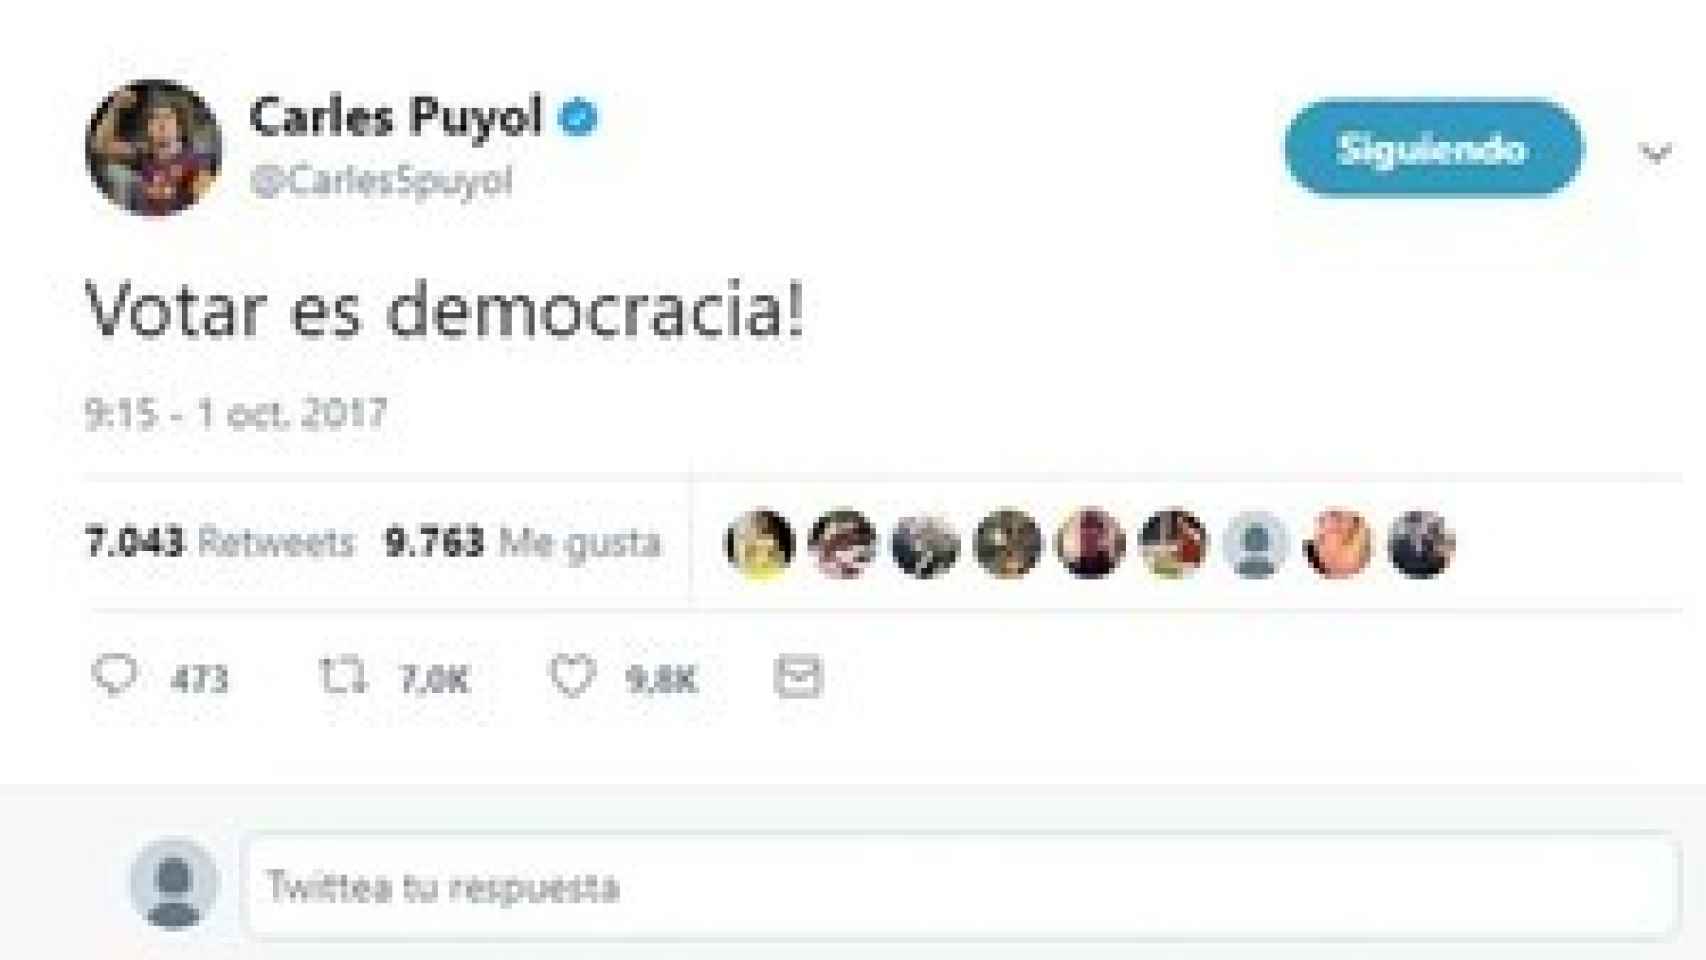 La publicación de Carles Puyol el 1-0